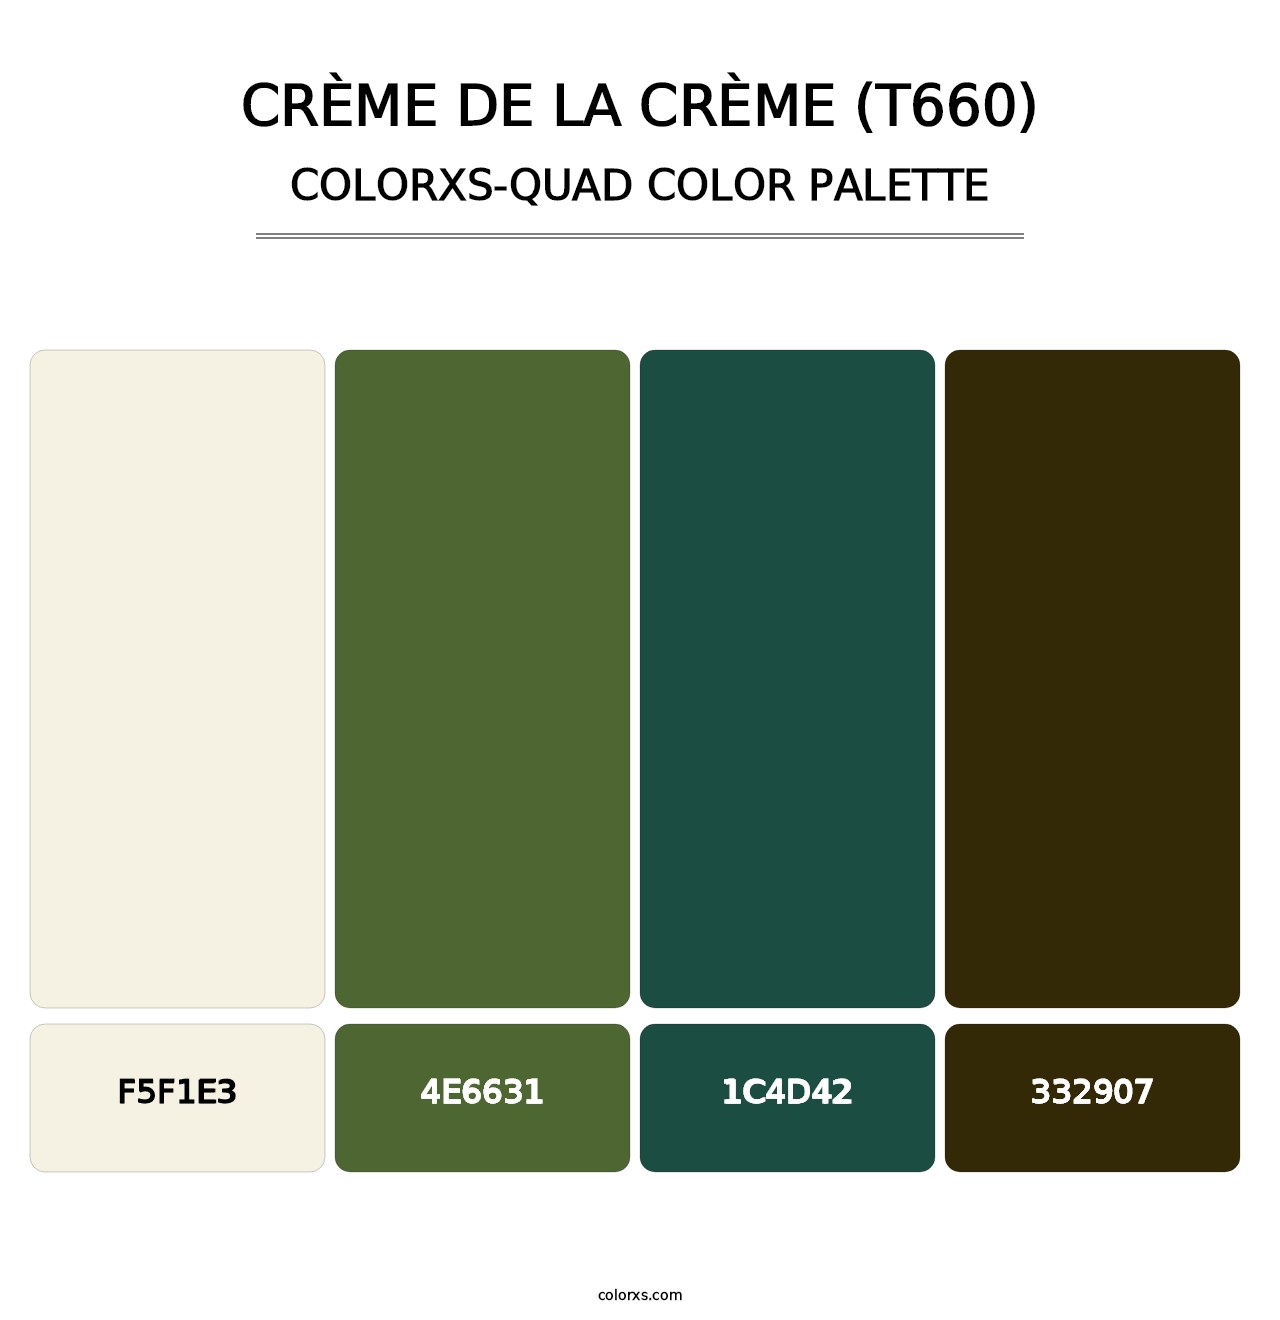 Crème de la Crème (T660) - Colorxs Quad Palette